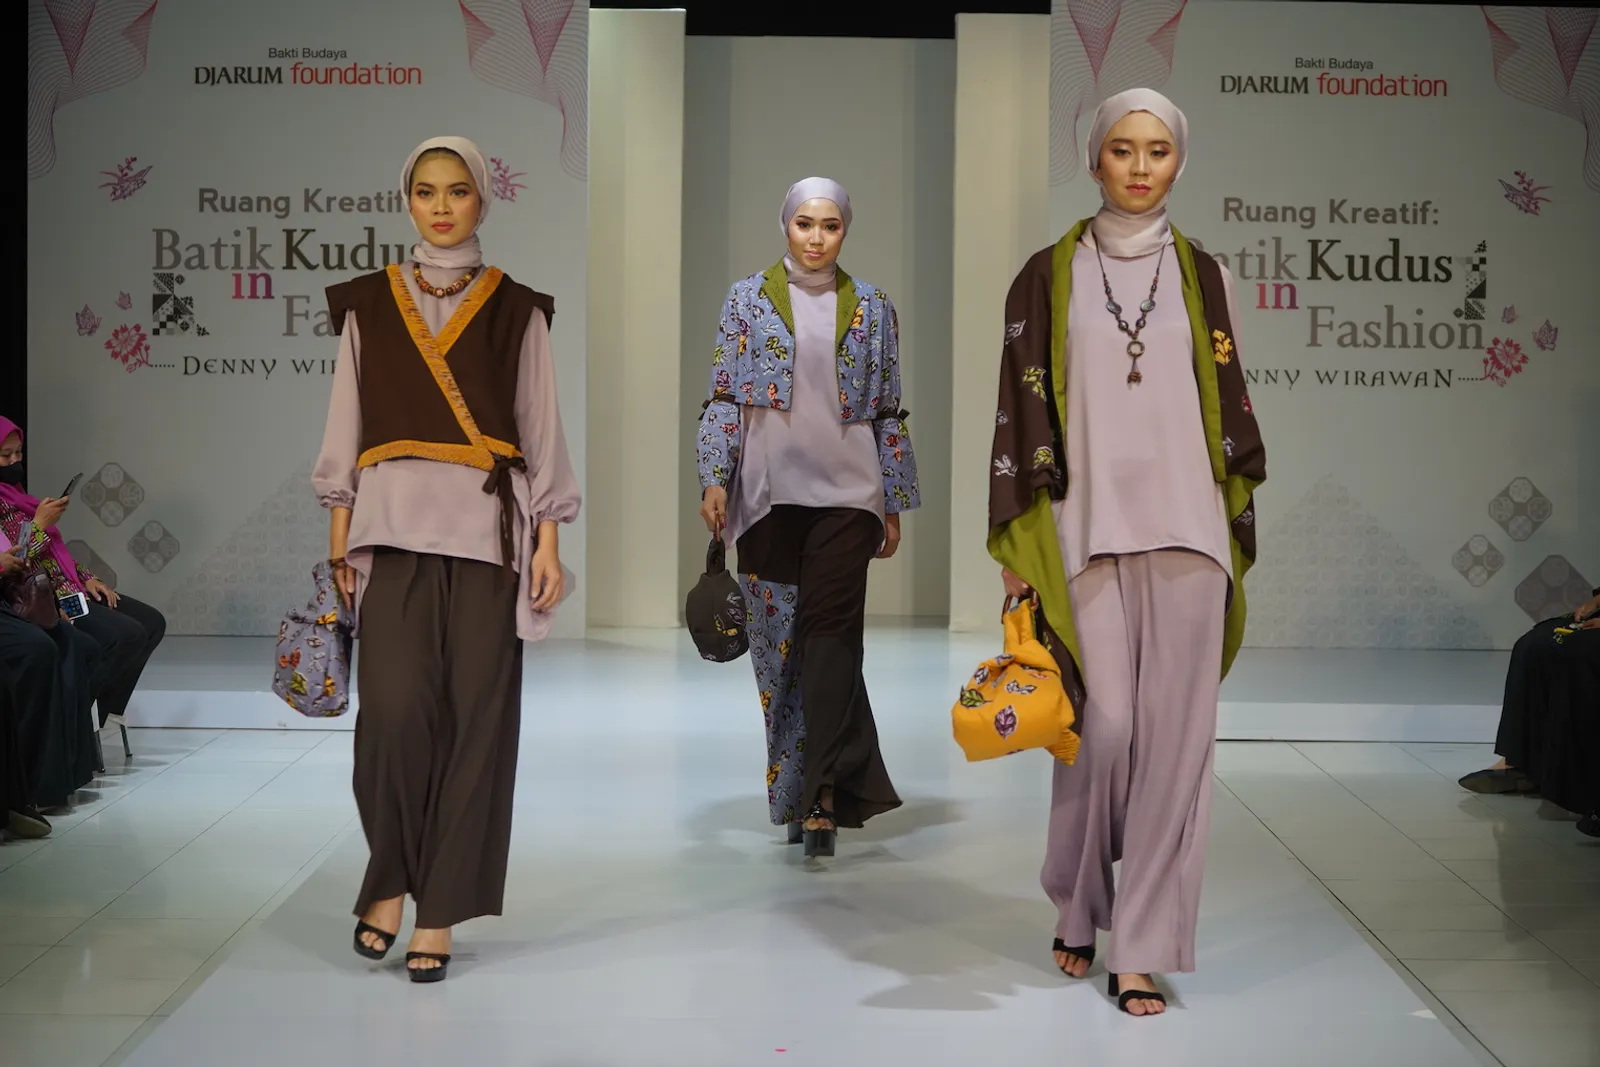 Mengintip Ruang Kreatif: Batik Kudus in Fashion oleh Denny Wirawan